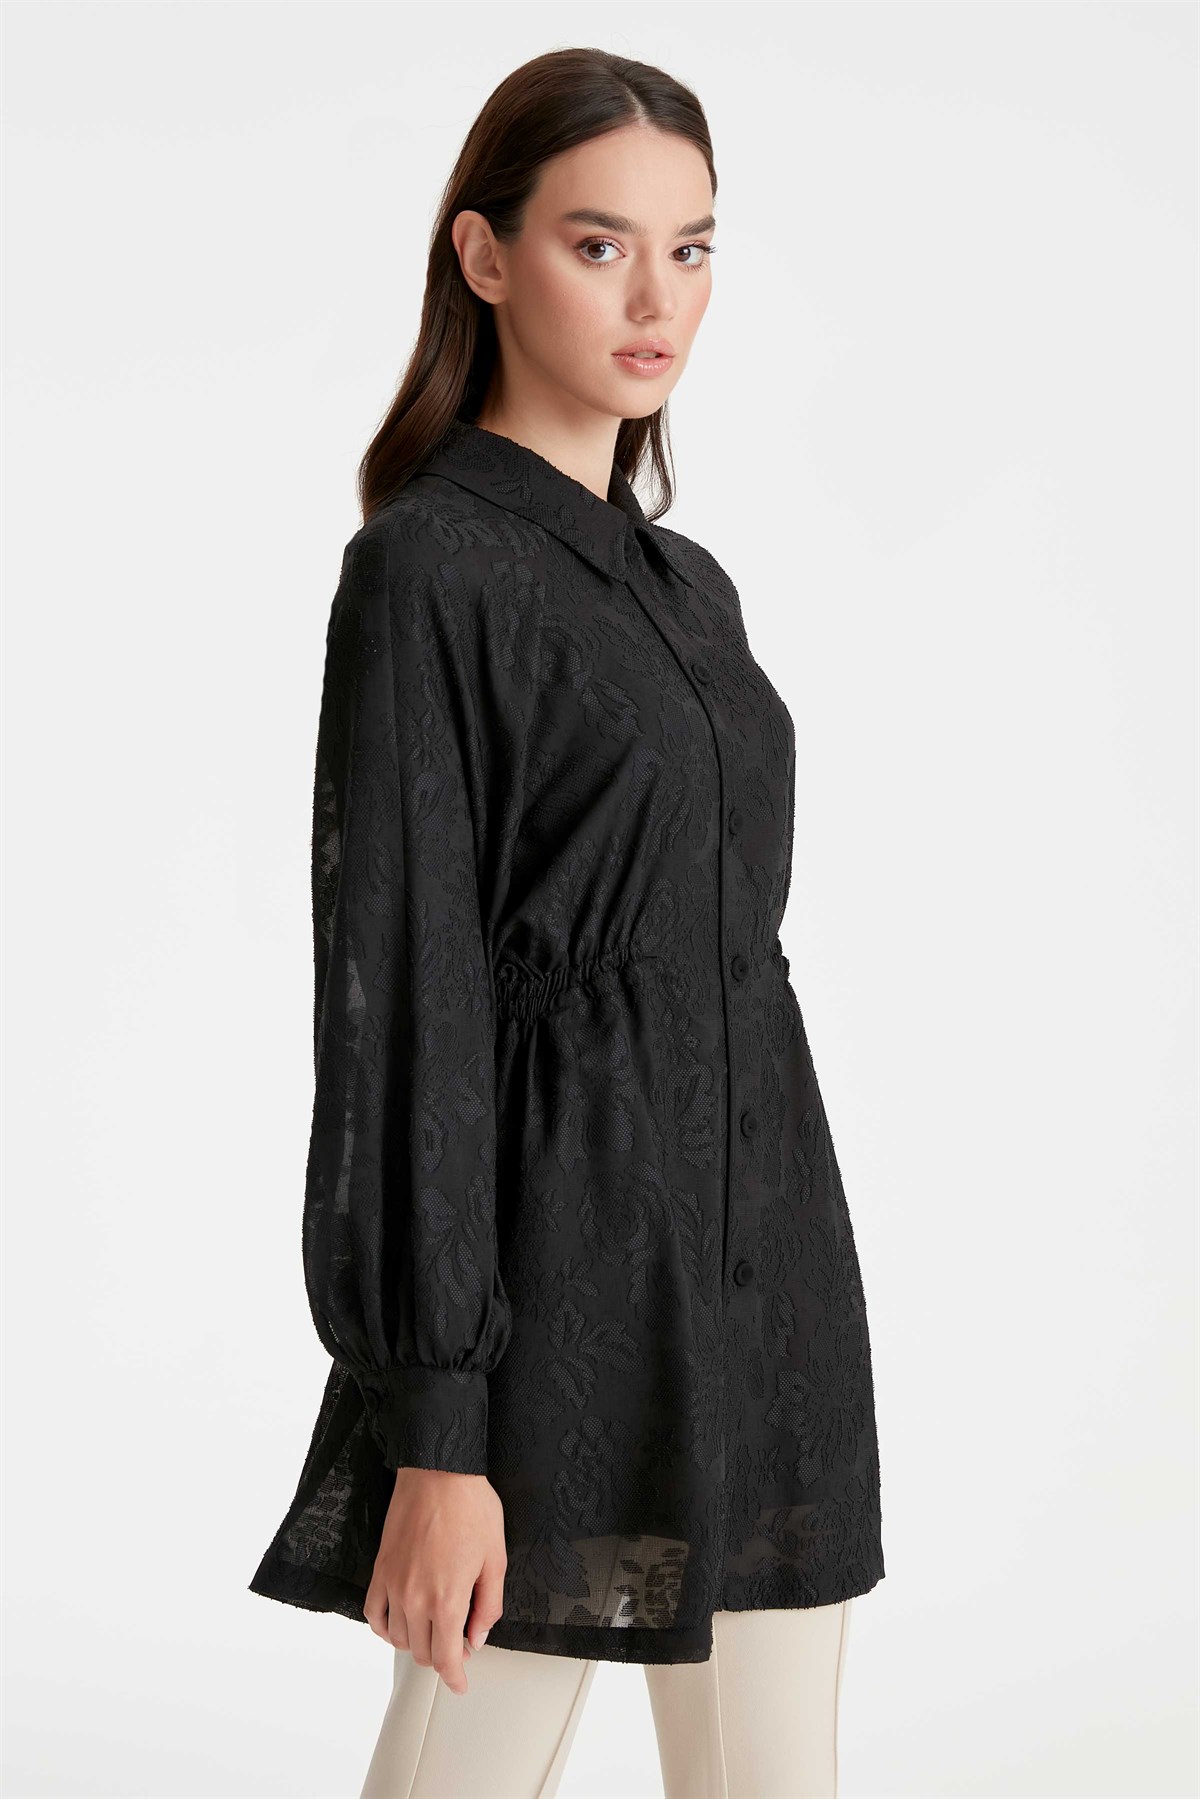 Jacquard Jacket Long Sleeve Blouse Double Suit - Black